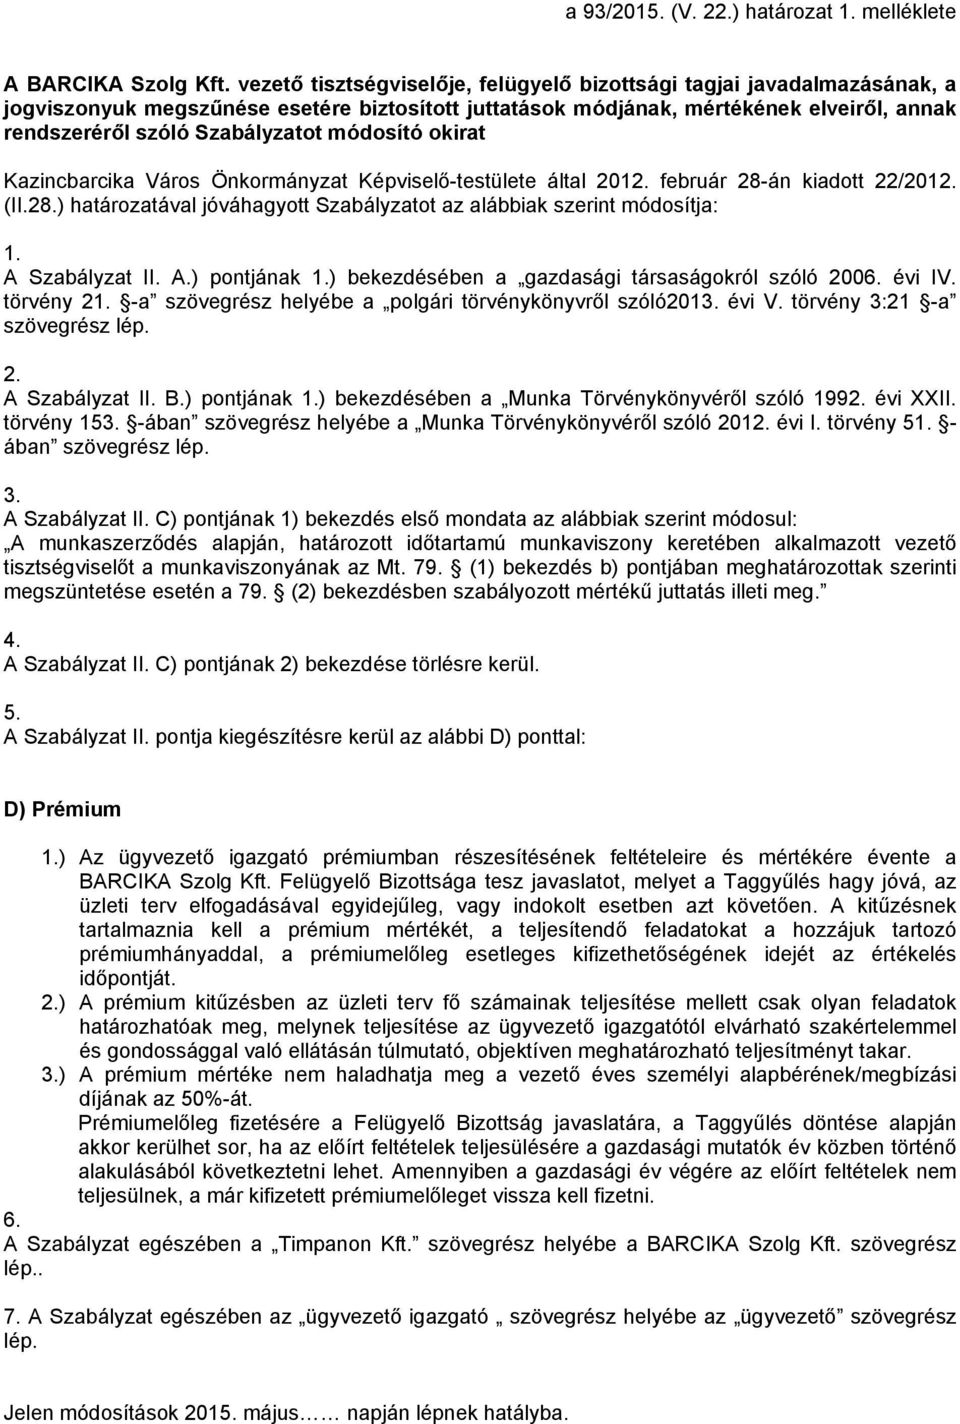 módosító okirat Kazincbarcika Város Önkormányzat Képviselő-testülete által 2012. február 28-án kiadott 22/2012. (II.28.) határozatával jóváhagyott Szabályzatot az alábbiak szerint módosítja: 1.